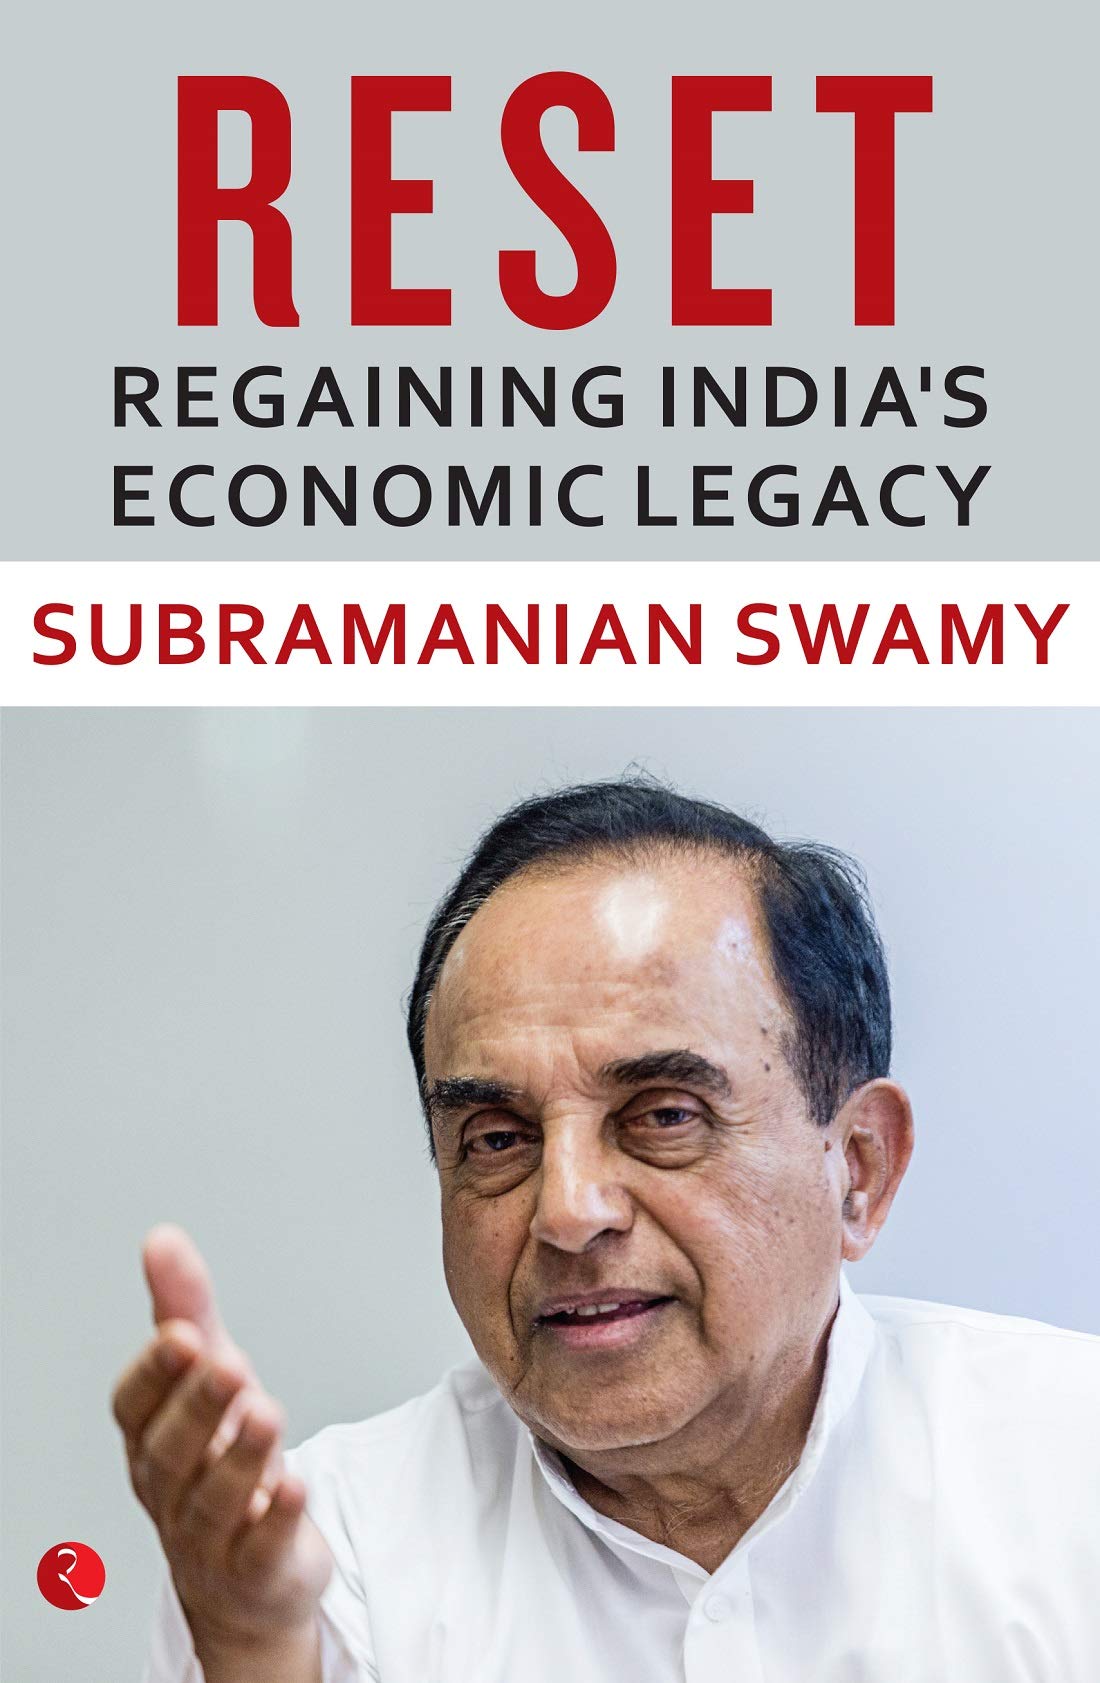 RESET REGAINING INDIA'S ECONOMIC LEGACY